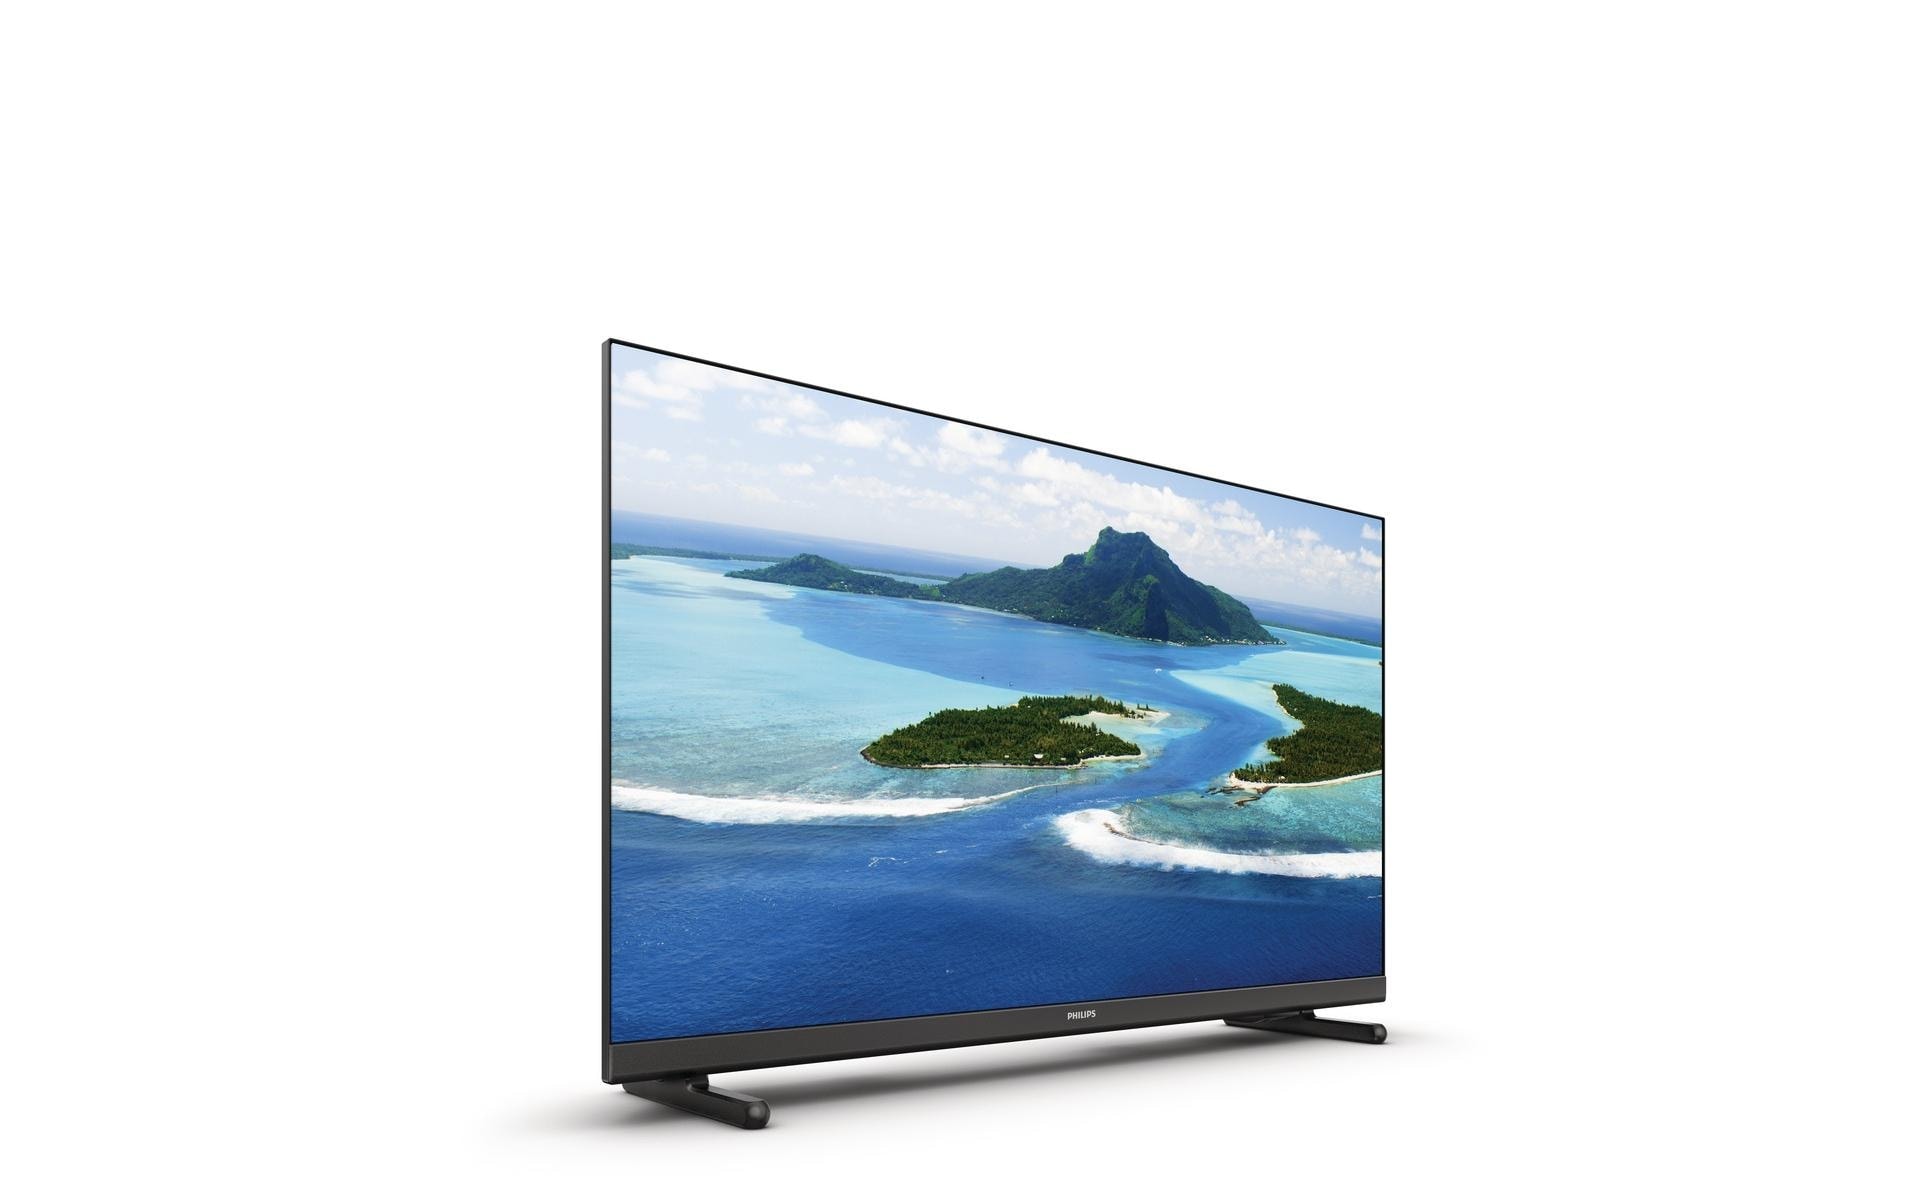 Philips LCD-LED Fernseher »43PFS5507/12, 43 LED-«, 108 cm/43 Zoll, Full HD